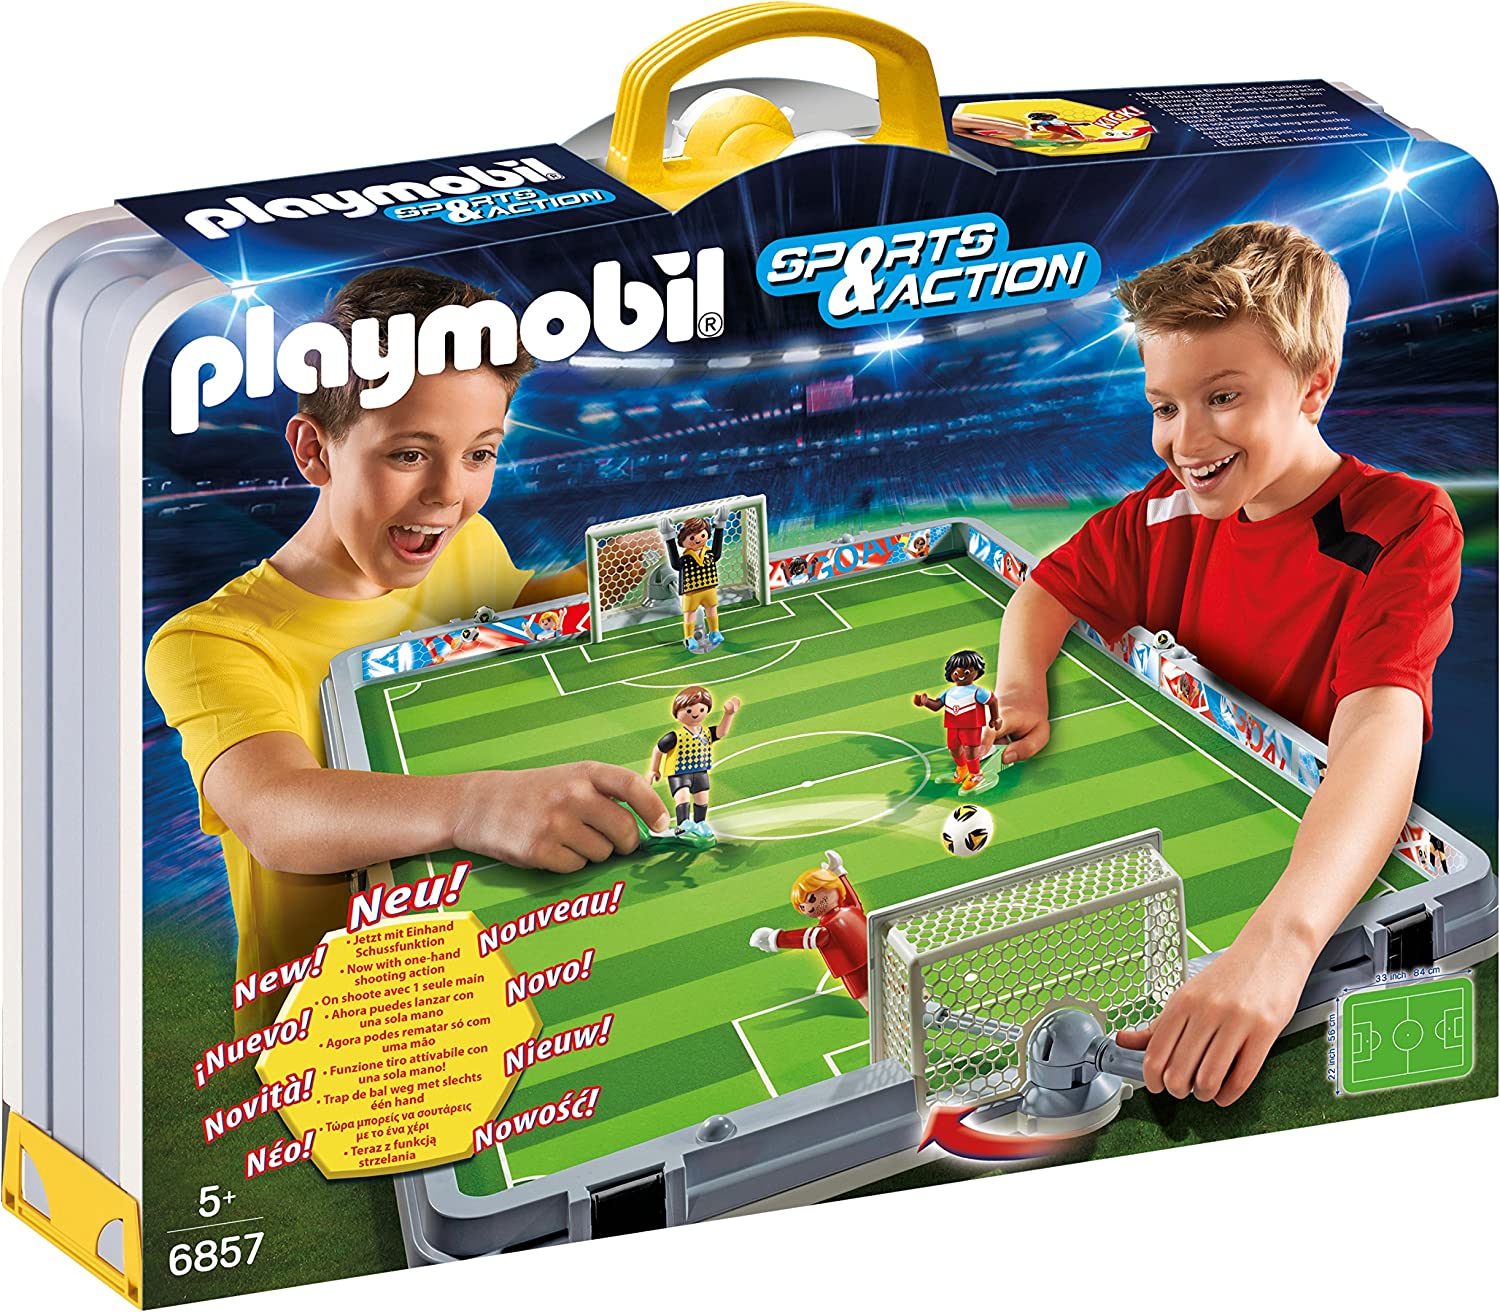 Coupe du monde 2022 Top des jouets pour vos enfants fans de foot